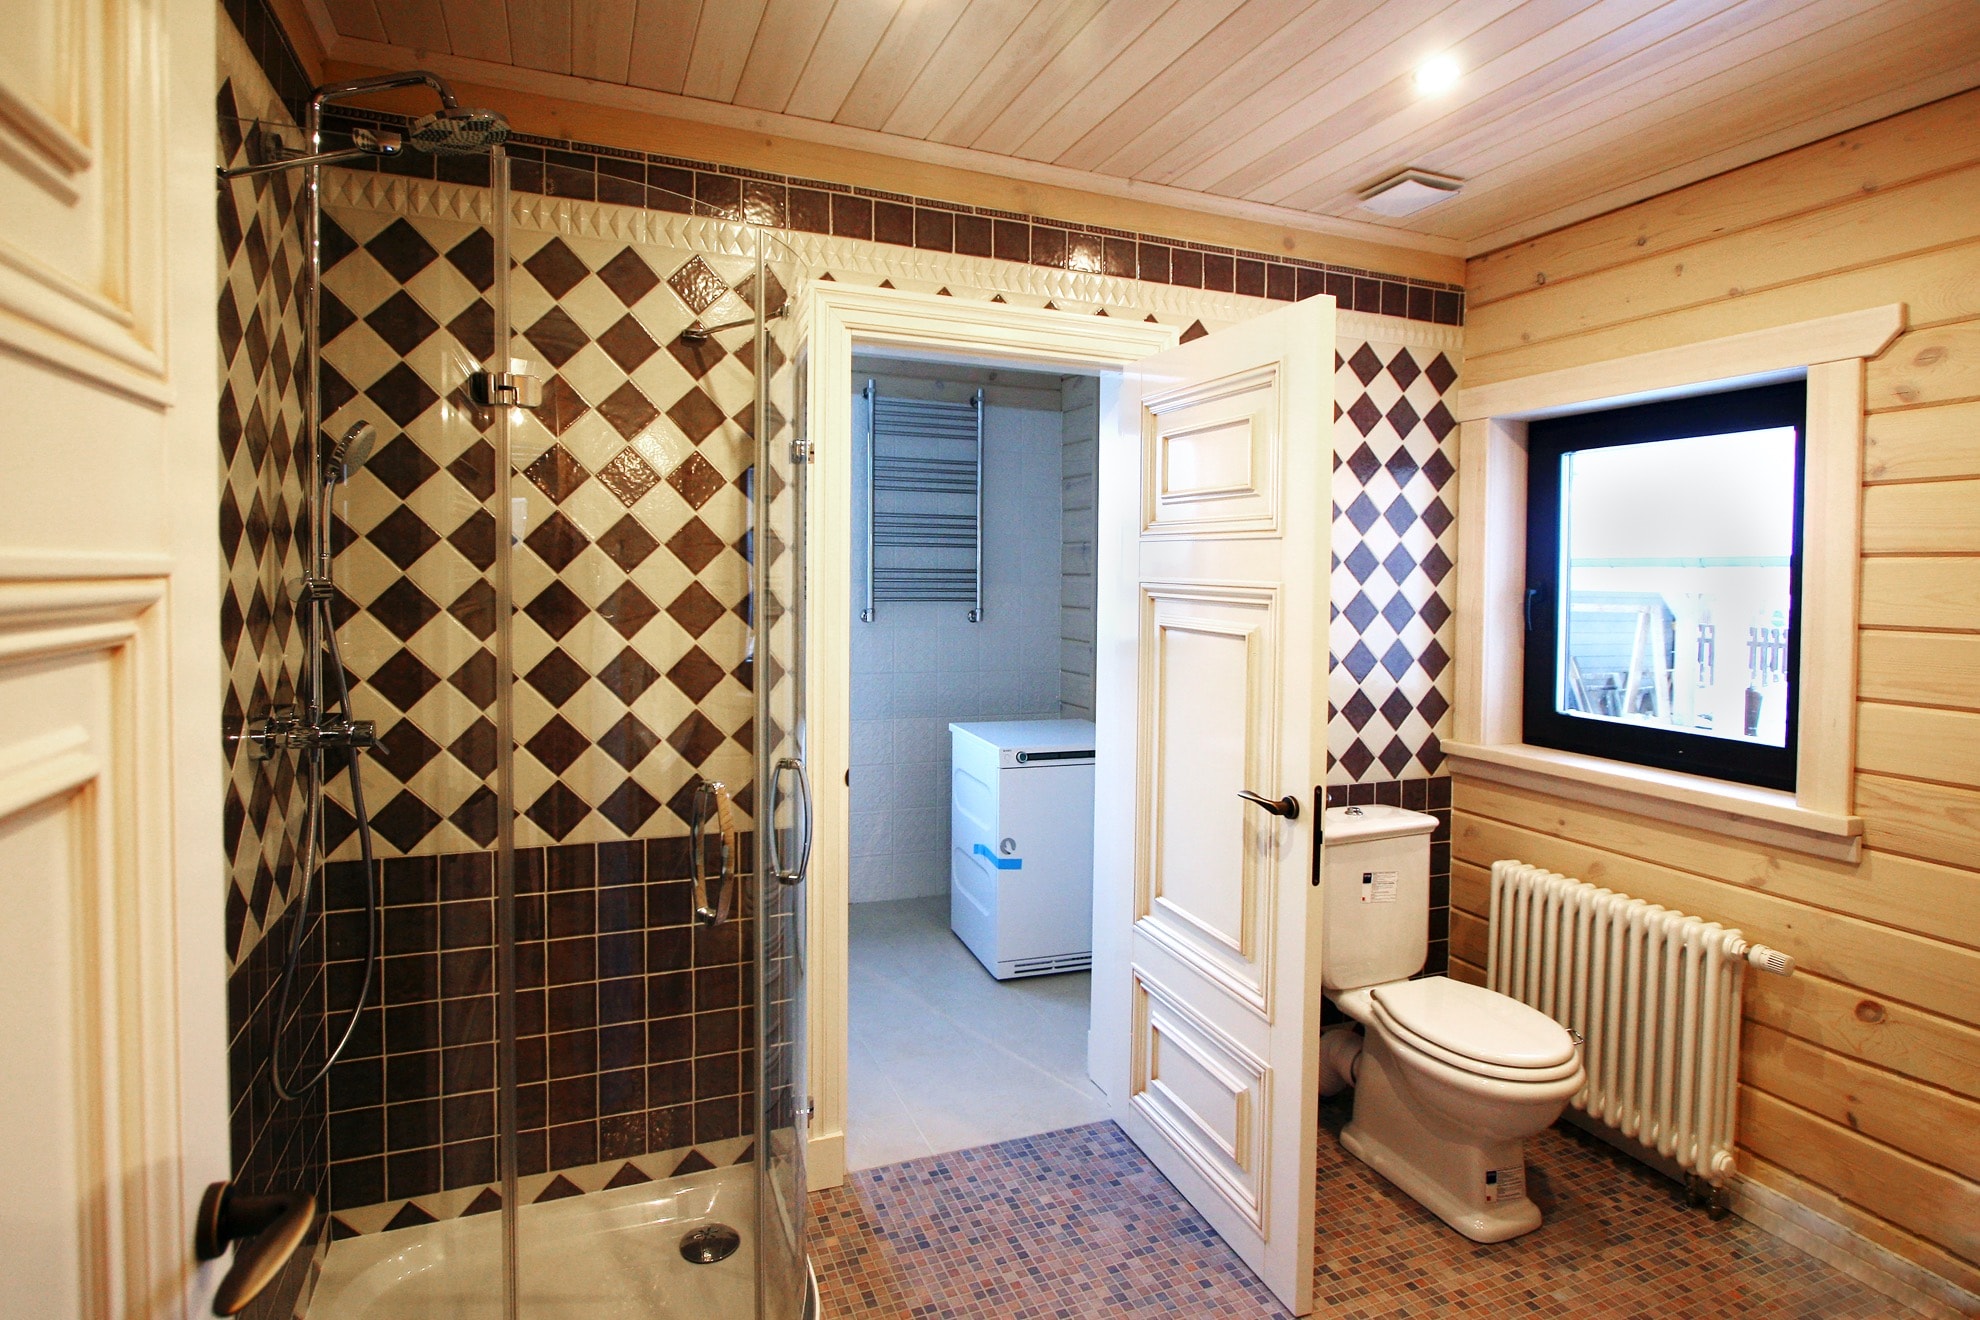 Ванная комната (санузел) деревянного дома из клееного бруса